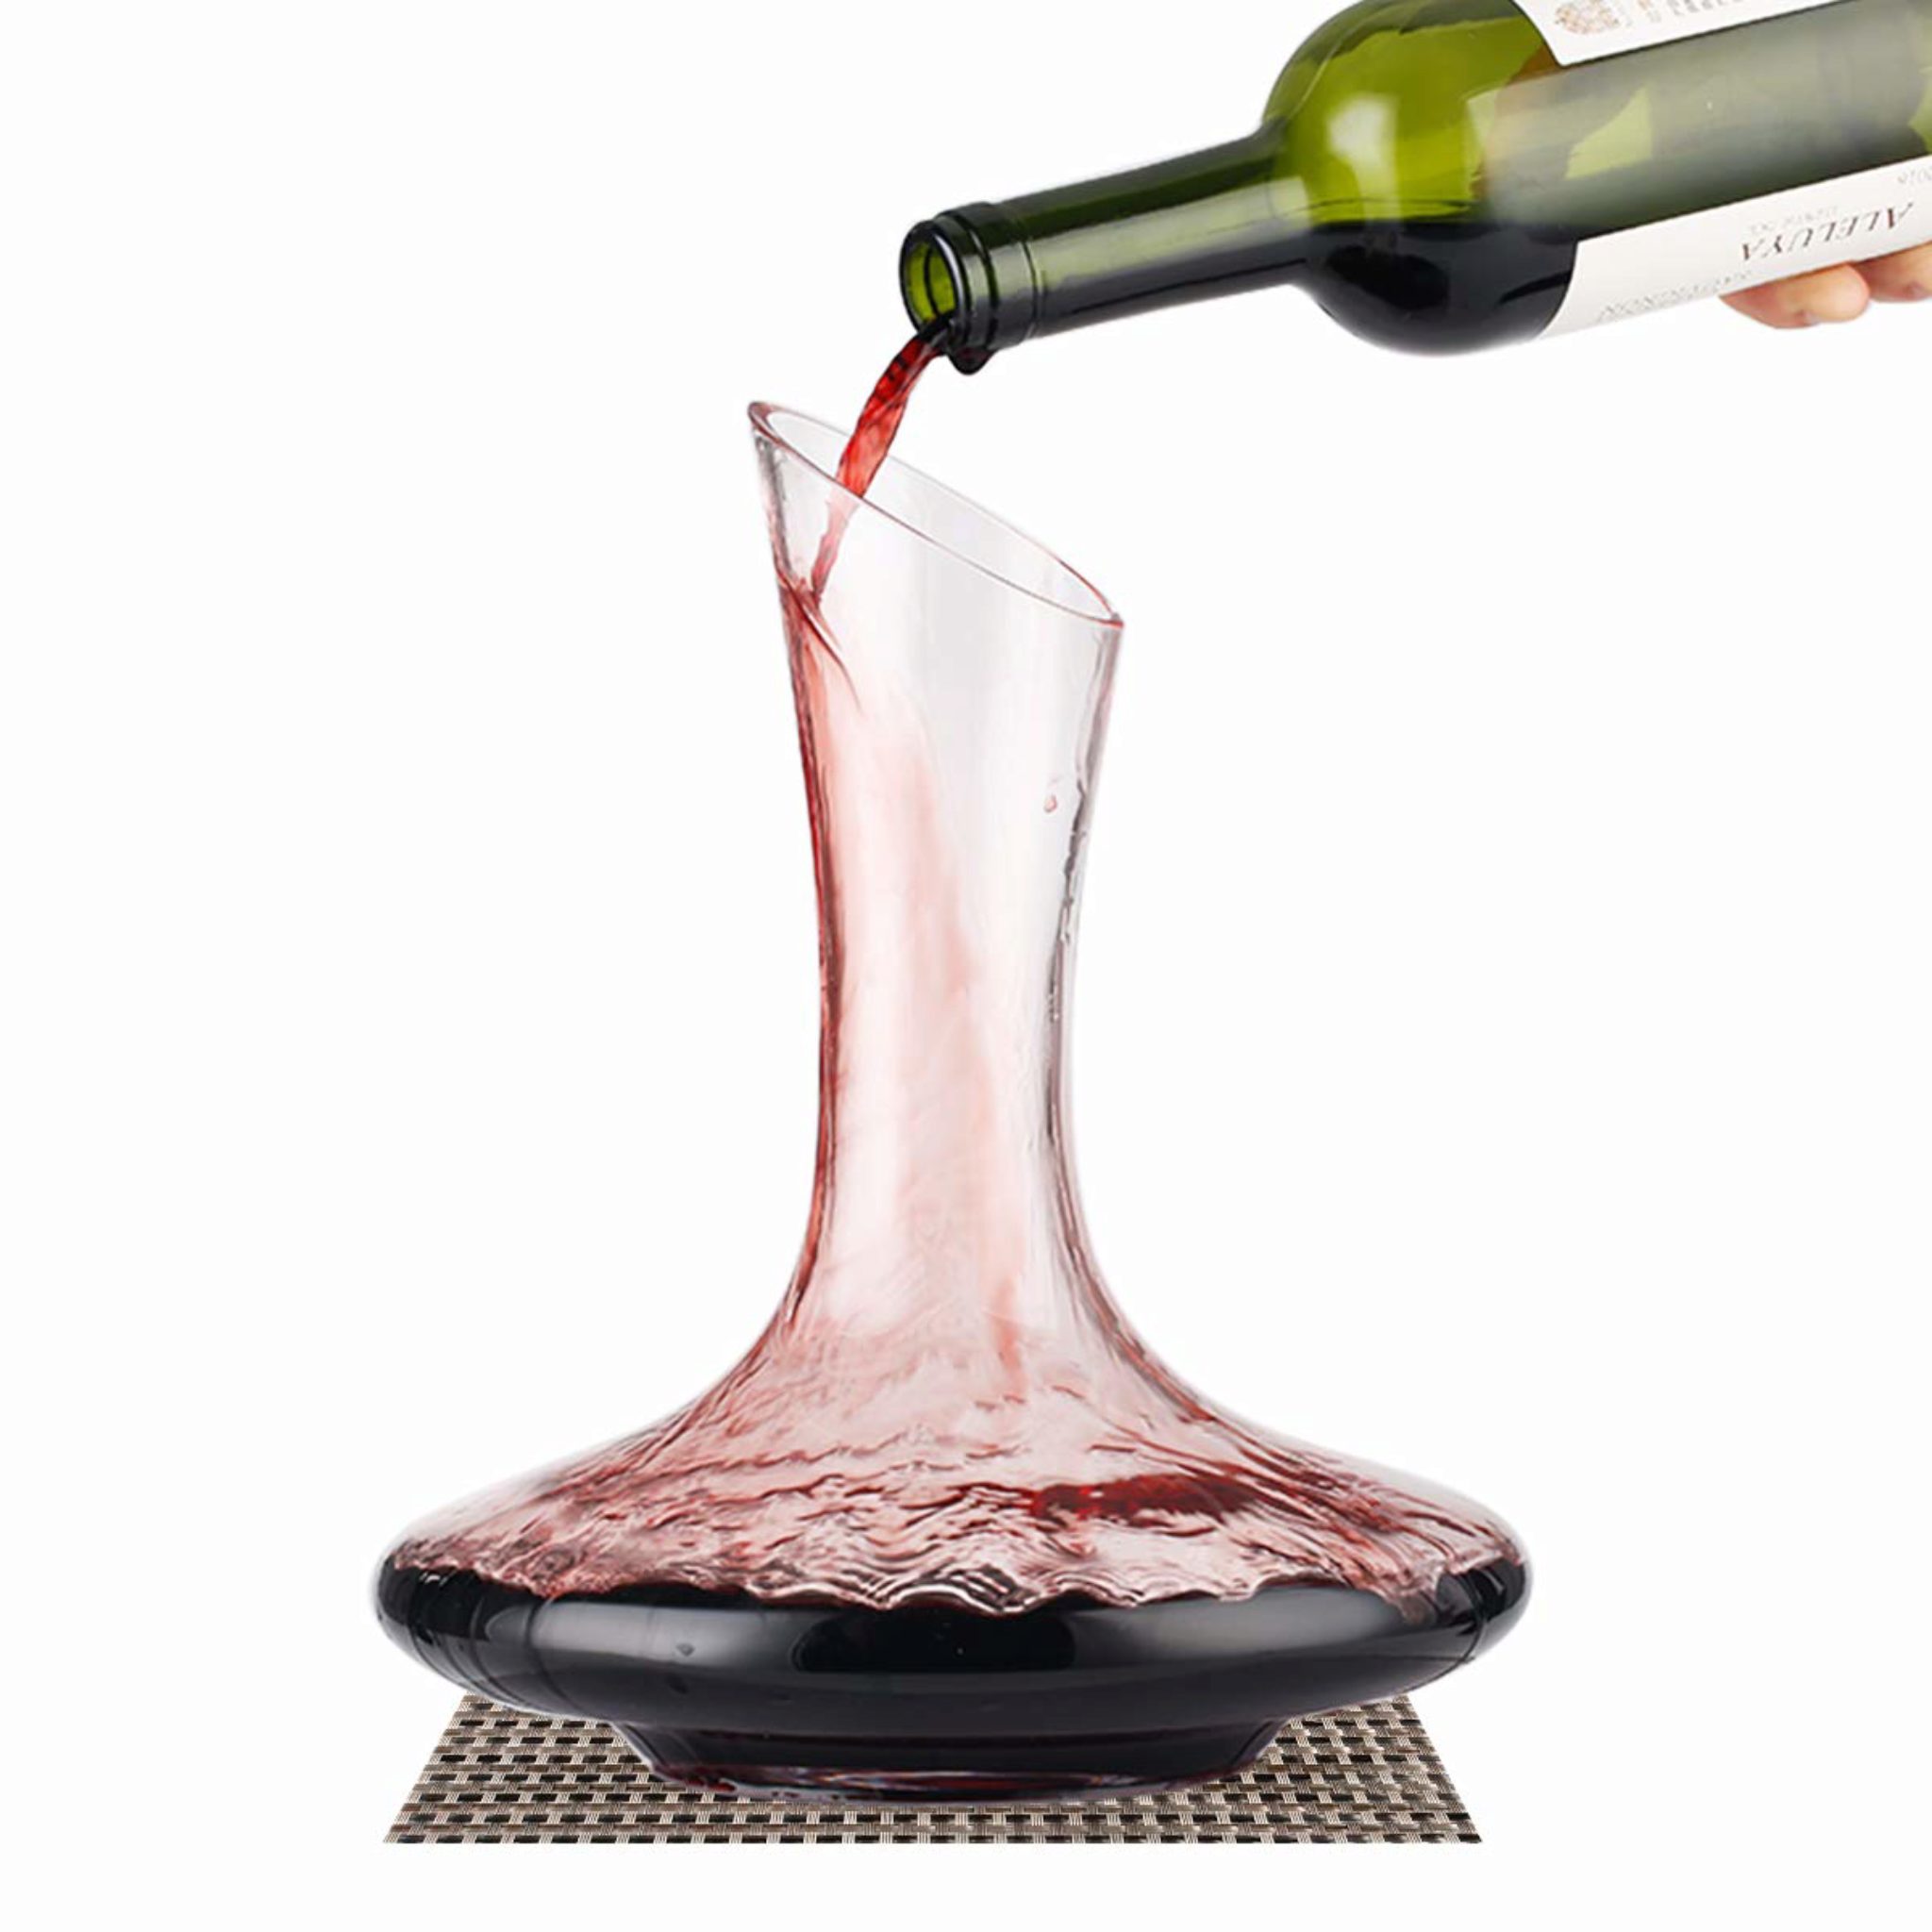 Carafe a decanter élégante avec support anti-goutte Aerateur vin bec verseur en acrylique Decanteur a vin instantané pour éliminer toute amertume et oxygéner le vin en quelques secondes. 